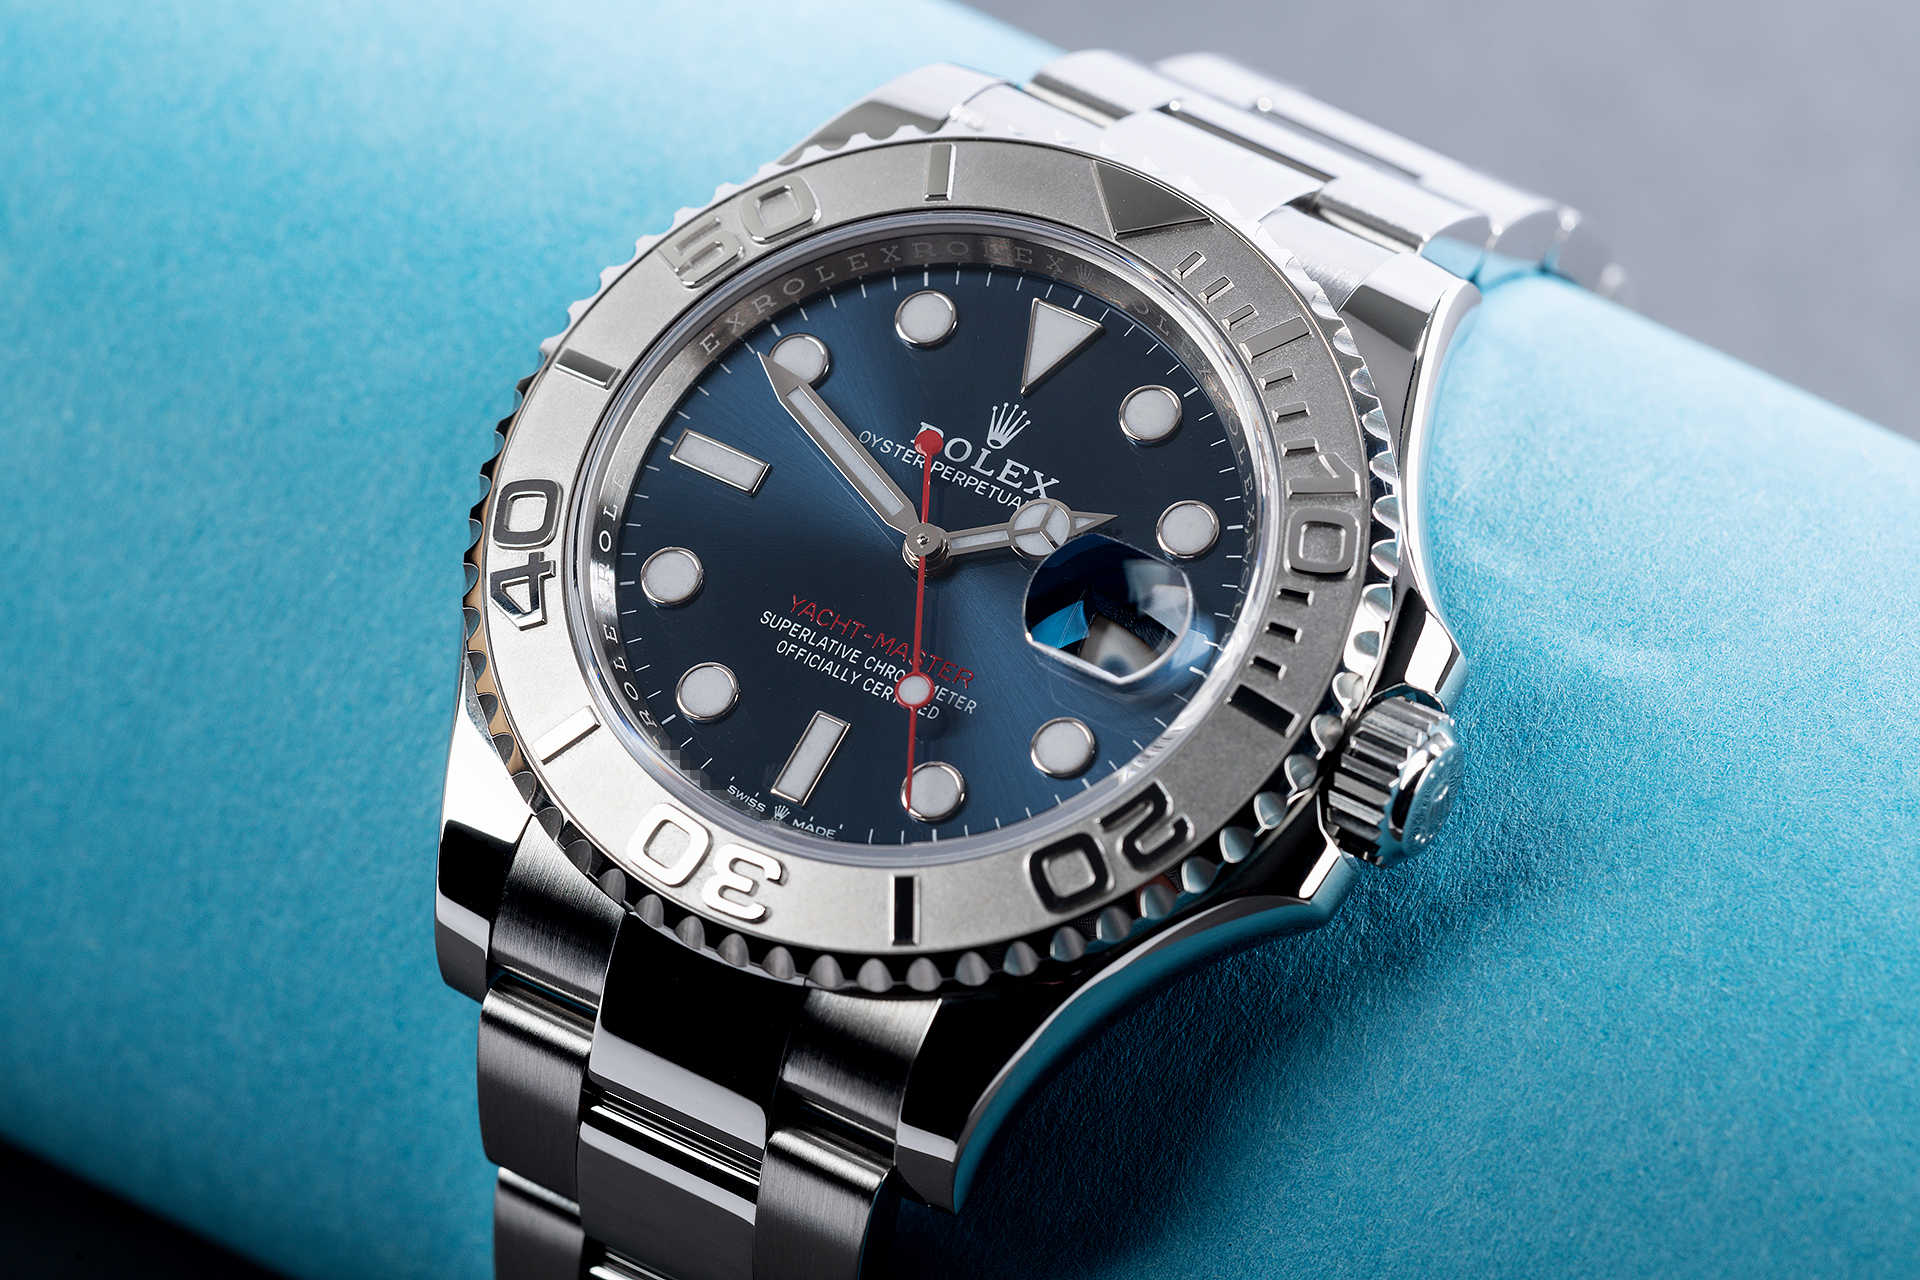 Rolex Yacht-Master Watches | ref 126622 | 5 Year Rolex Warranty | The ...